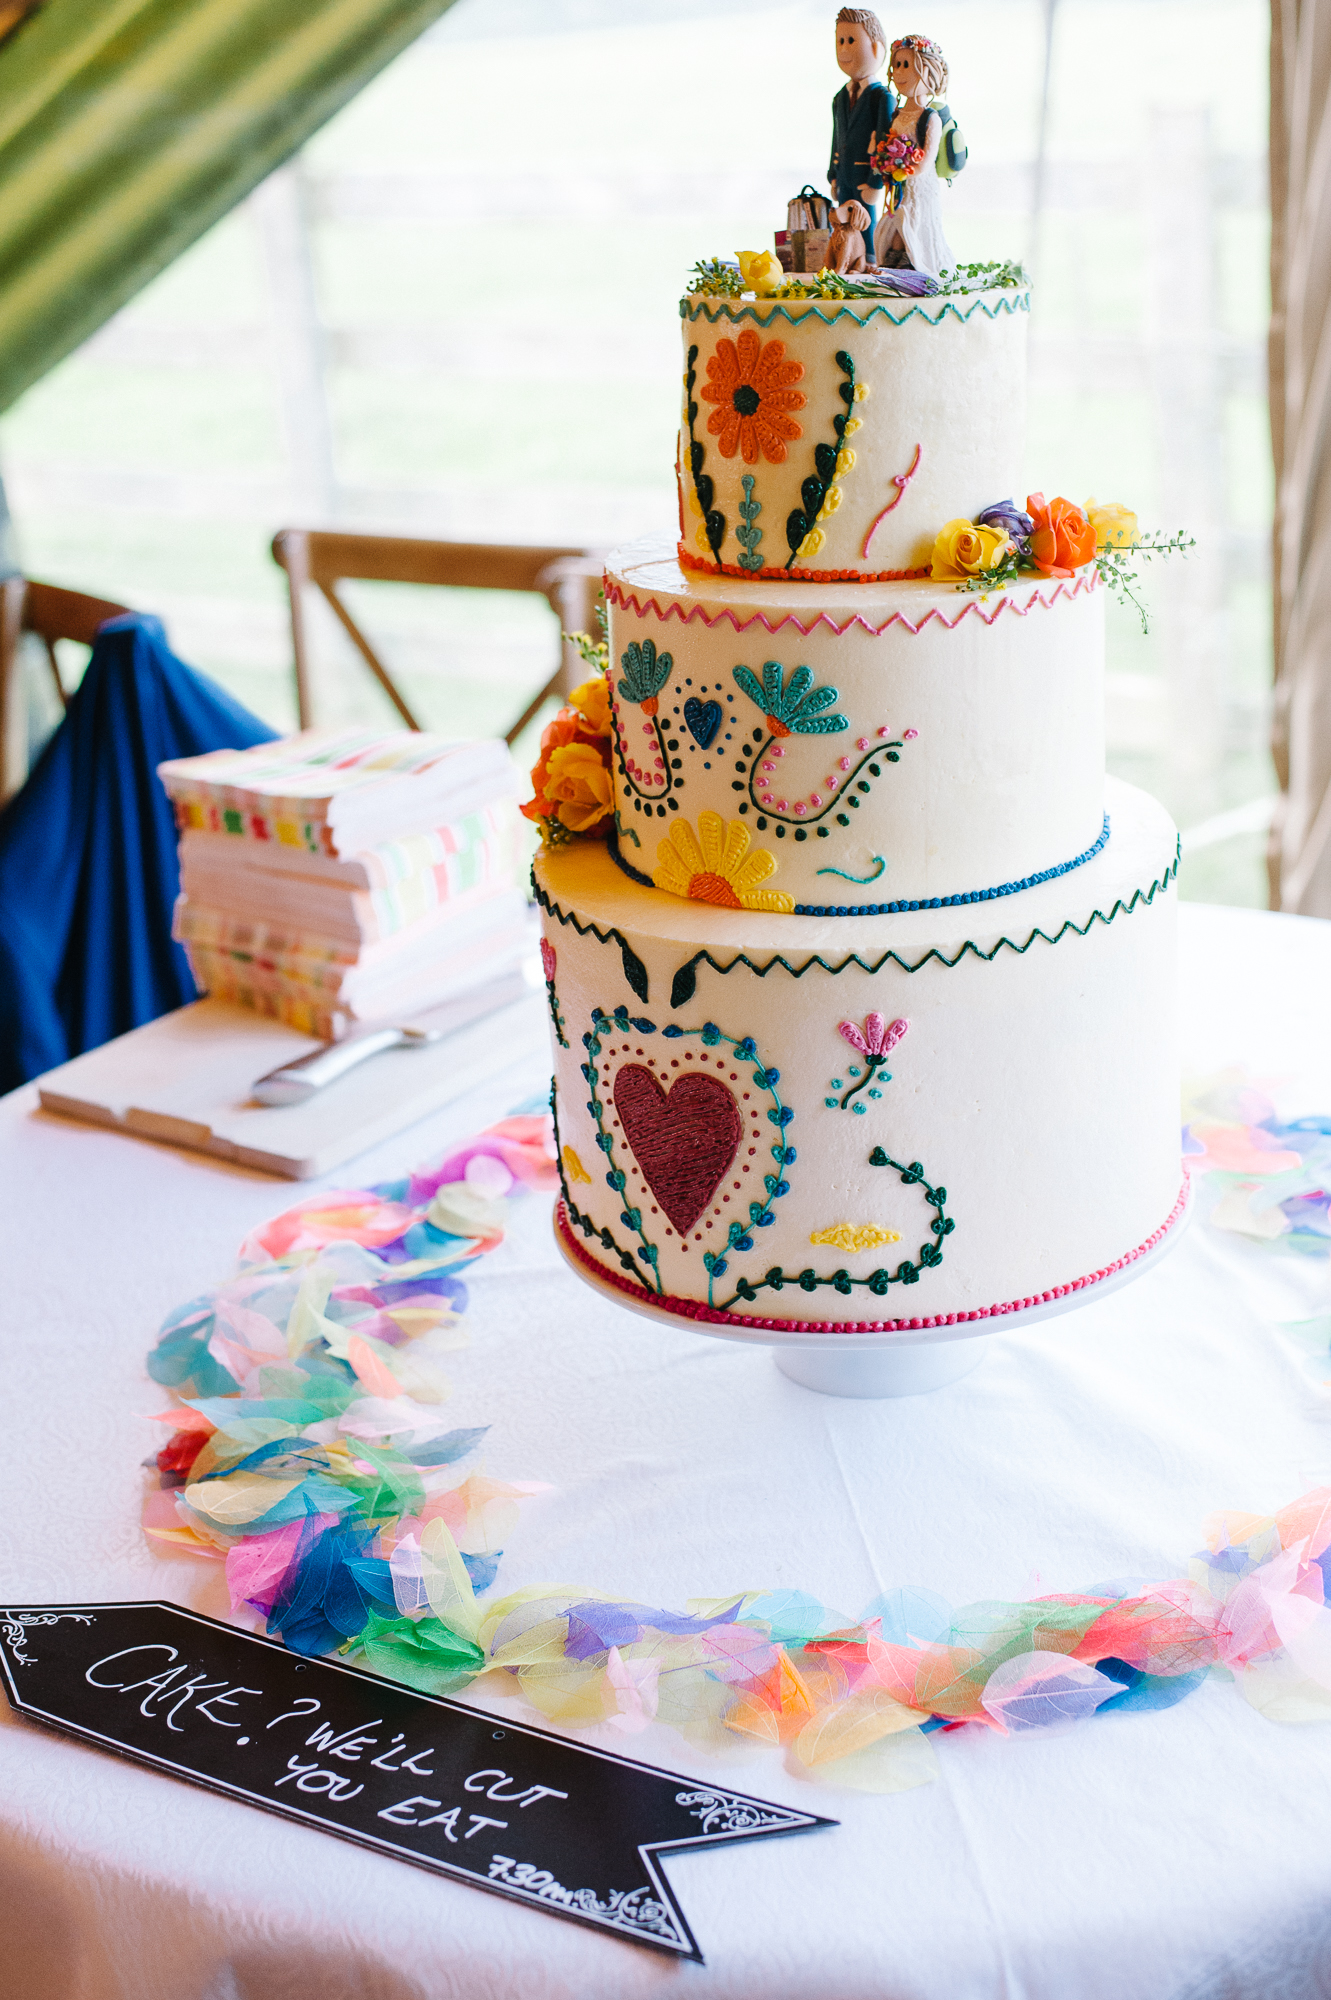 01 Colourful wedding cake